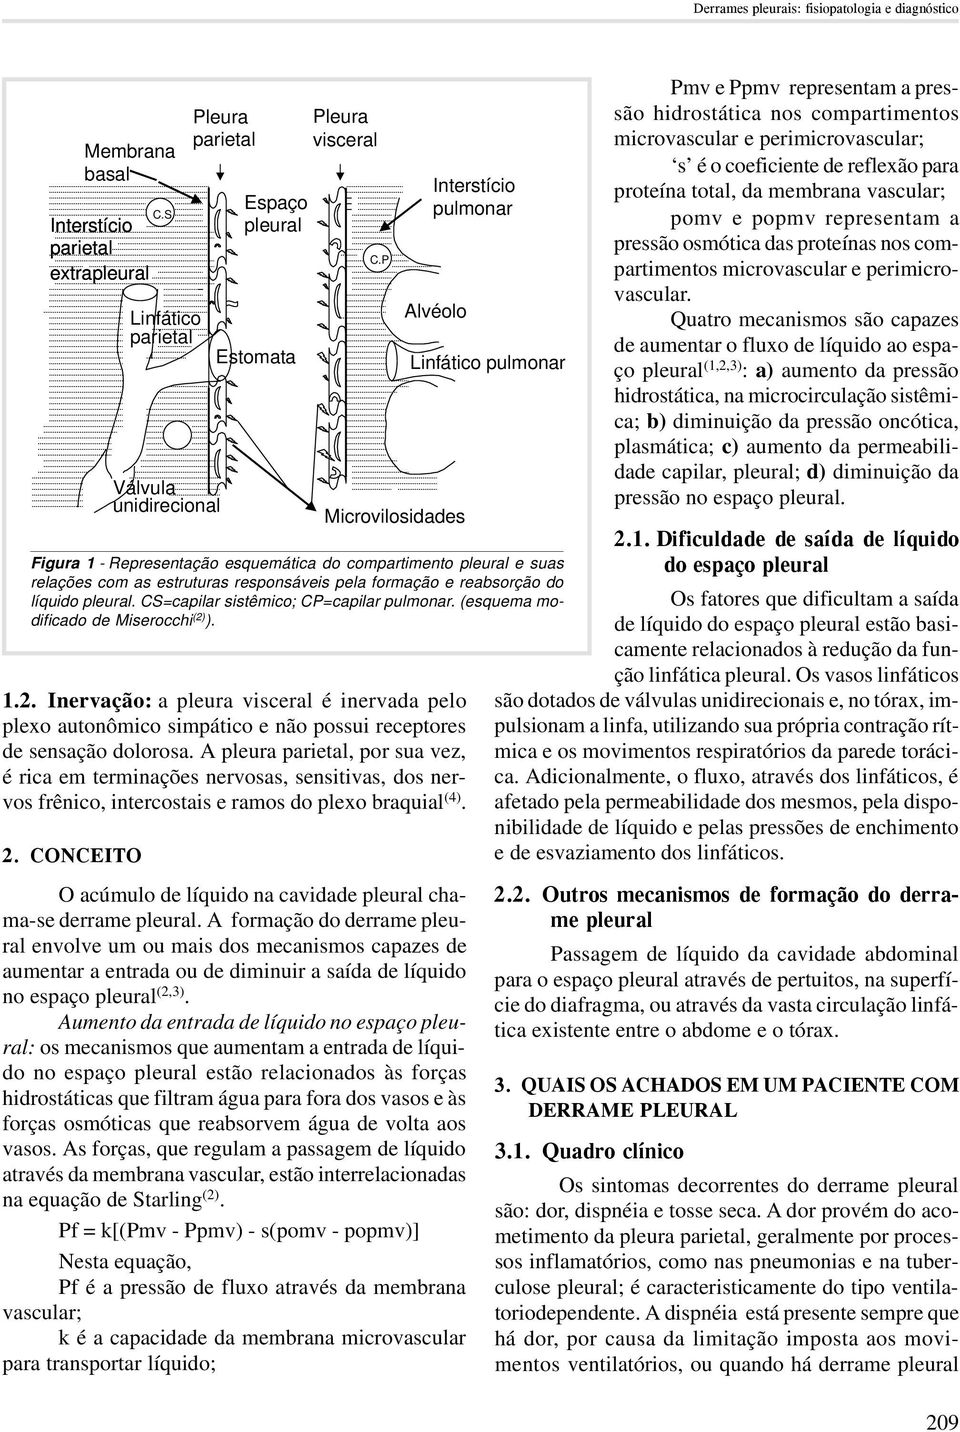 compartimento pleural e suas relações com as estruturas responsáveis pela formação e reabsorção do líquido pleural. CS=capilar sistêmico; CP=capilar pulmonar. (esquema modificado de Miserocchi (2) ).